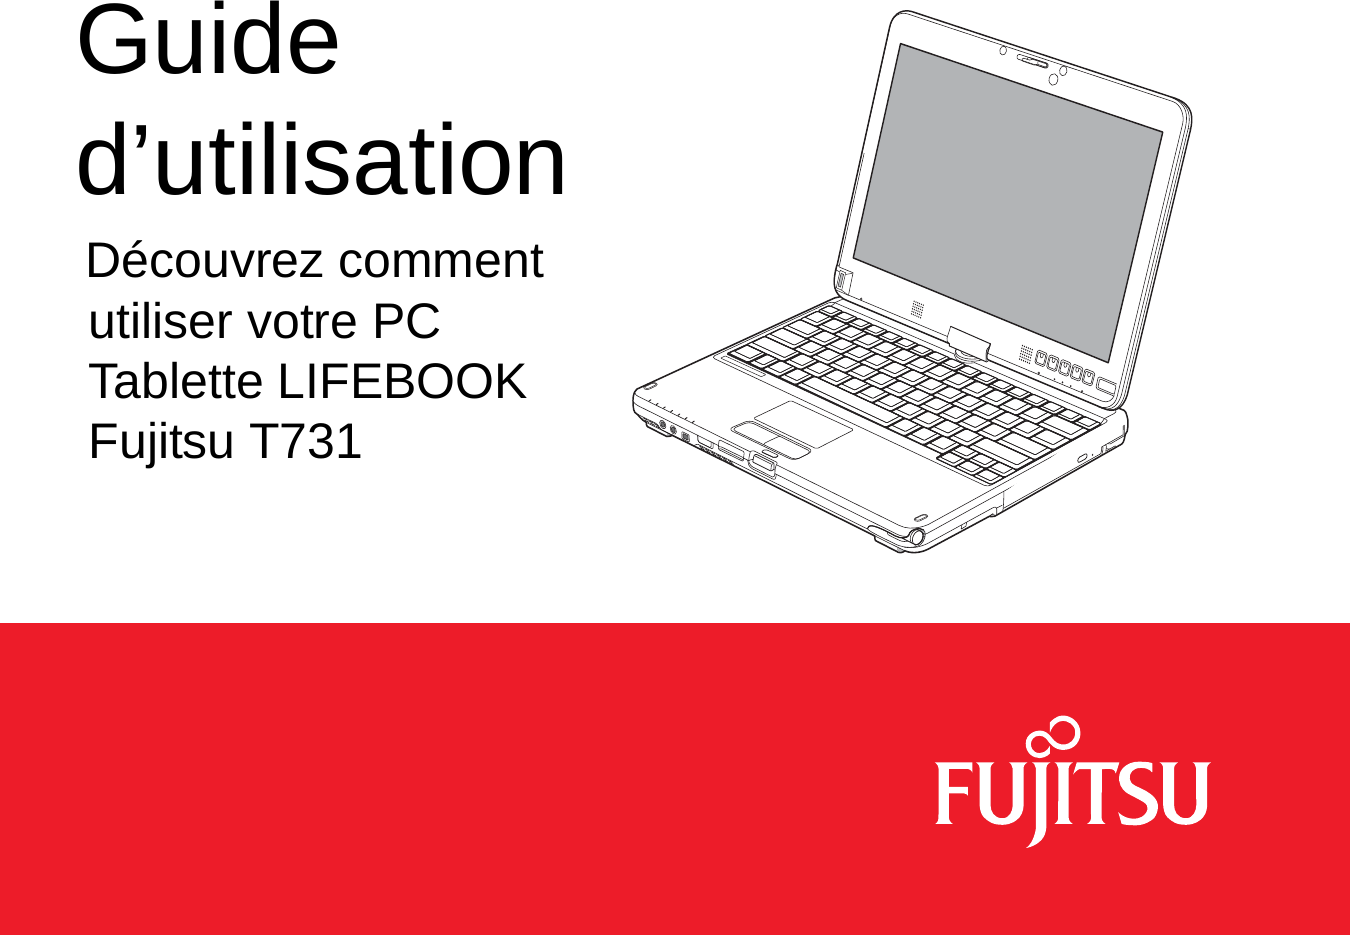 Guide d’utilisationDécouvrez comment utiliser votre PC Tablette LIFEBOOK Fujitsu T731